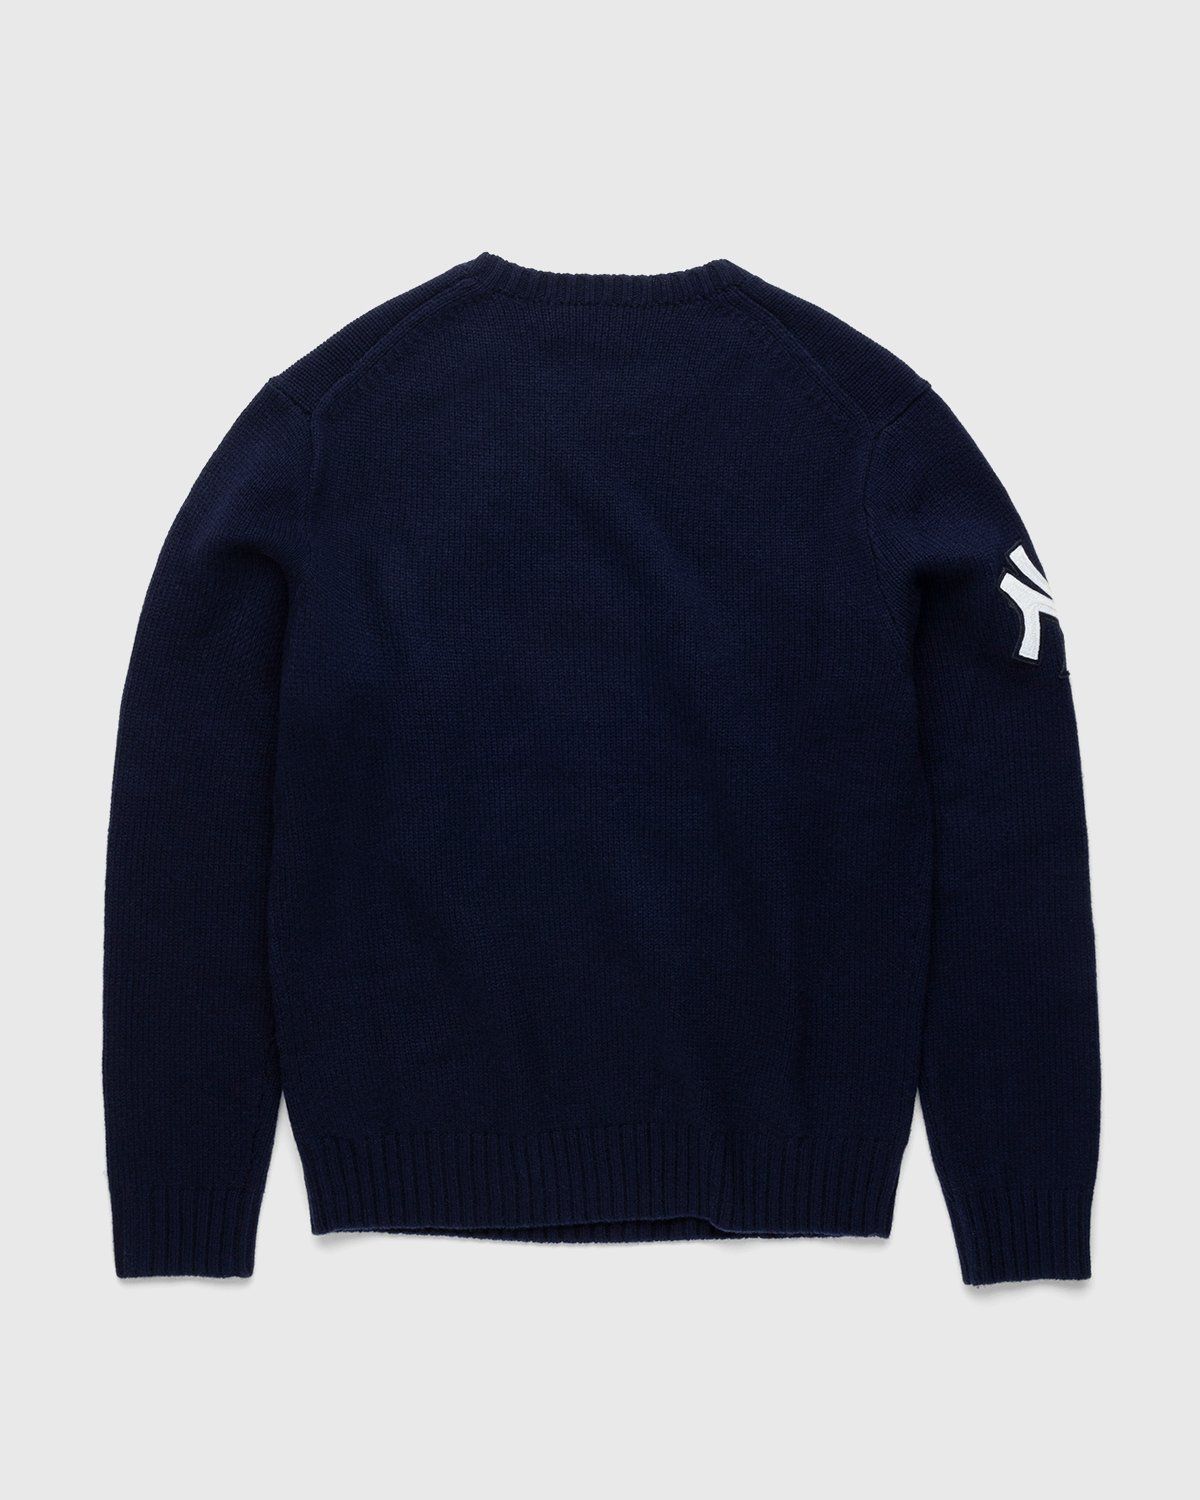 Ralph Lauren – Yankees Bear Sweater Navy - Knitwear - Blue - Image 2